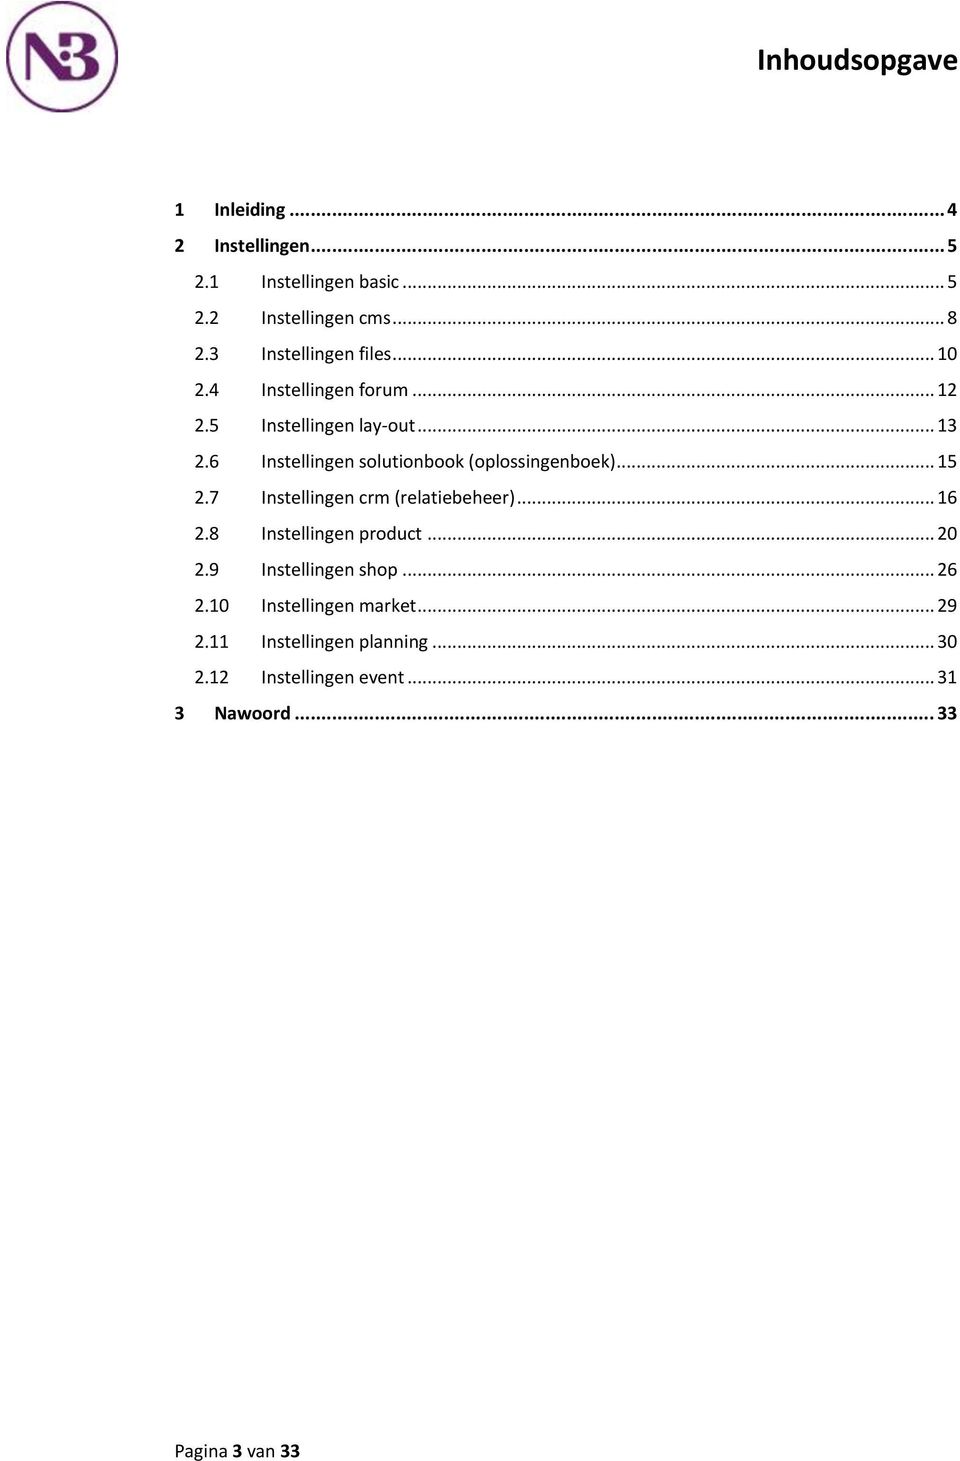 6 Instellingen solutionbook (oplossingenboek)... 15 2.7 Instellingen crm (relatiebeheer)... 16 2.